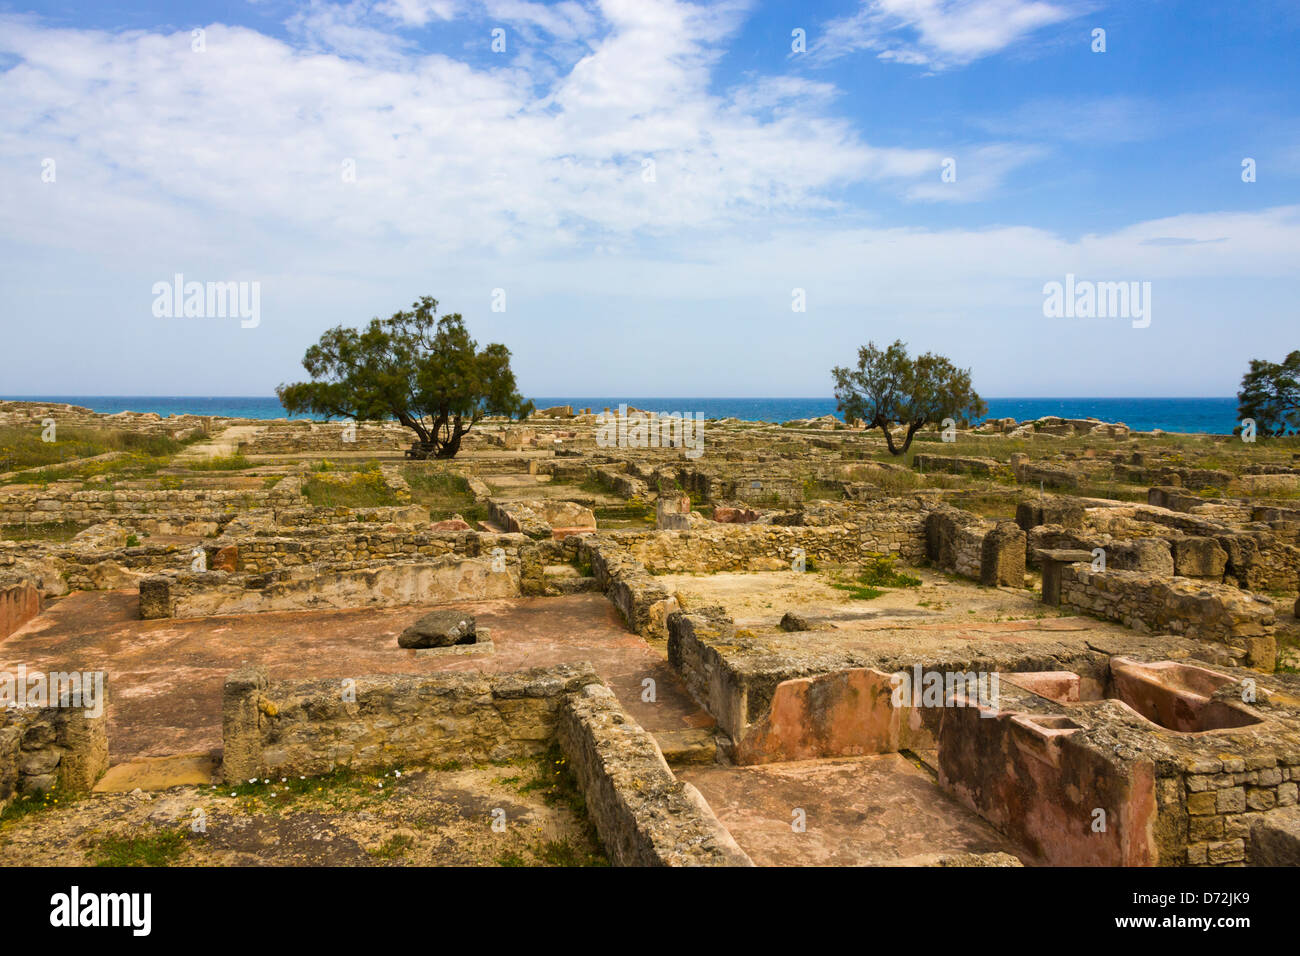 Presto le rovine romane, casa con cortile e peristilio, Rovine di Kerkouane, Cap Bon, in Tunisia Foto Stock